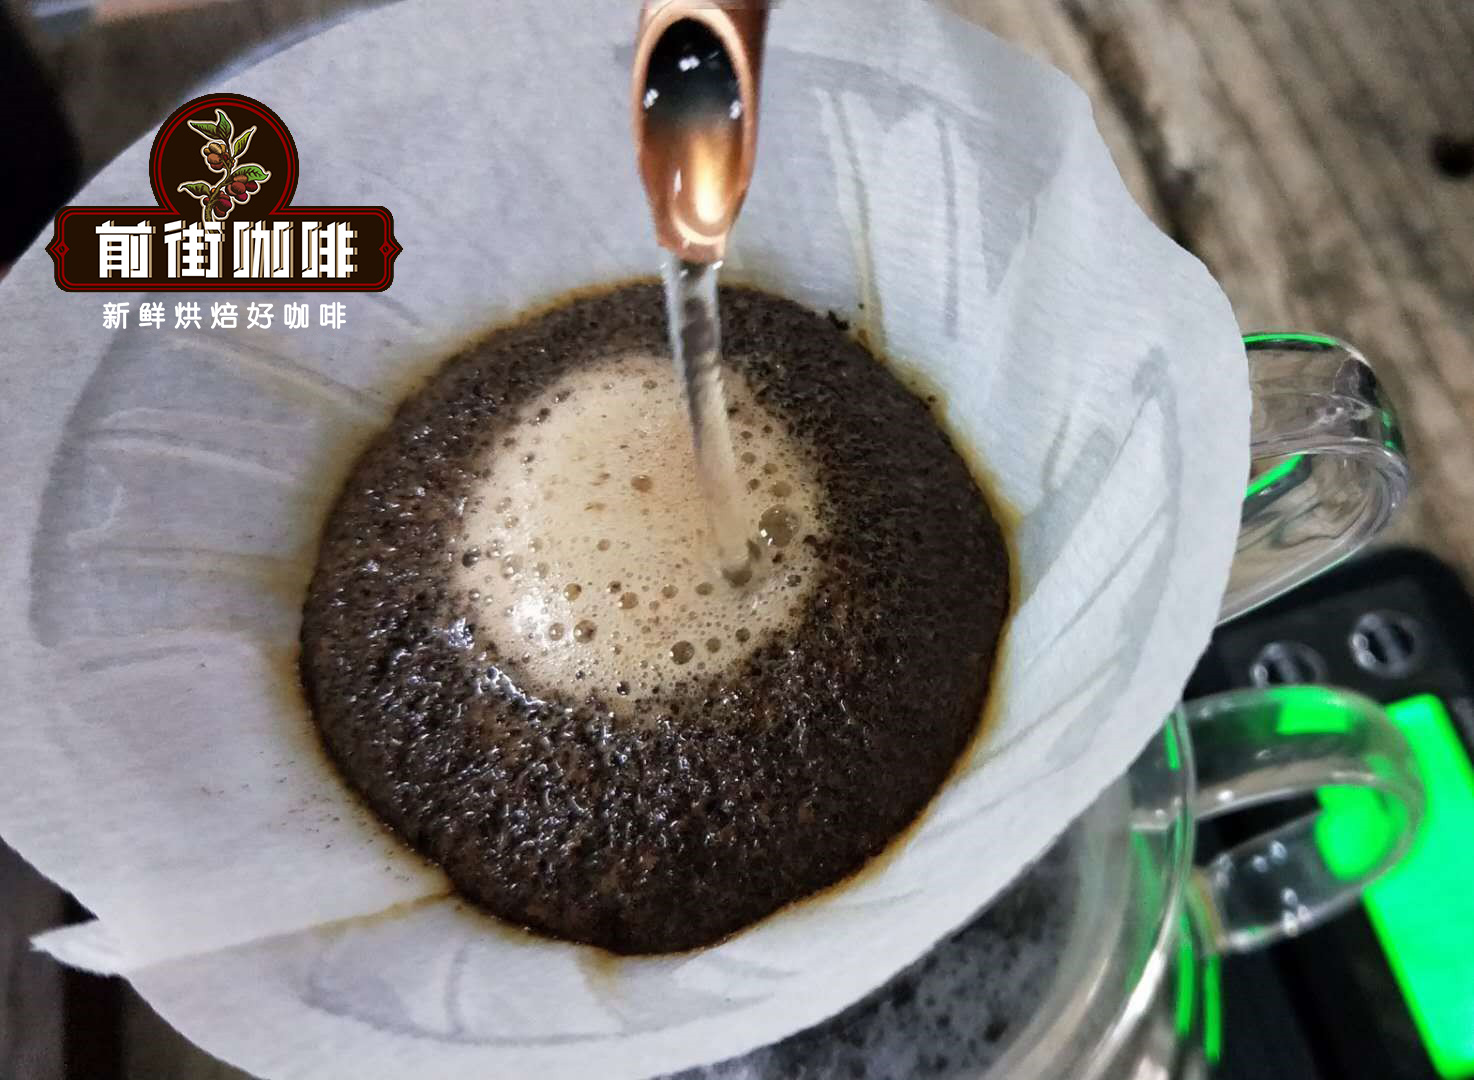  危地馬拉咖啡法壓壺和冷釀衝煮出來的風味哪種比較好喝